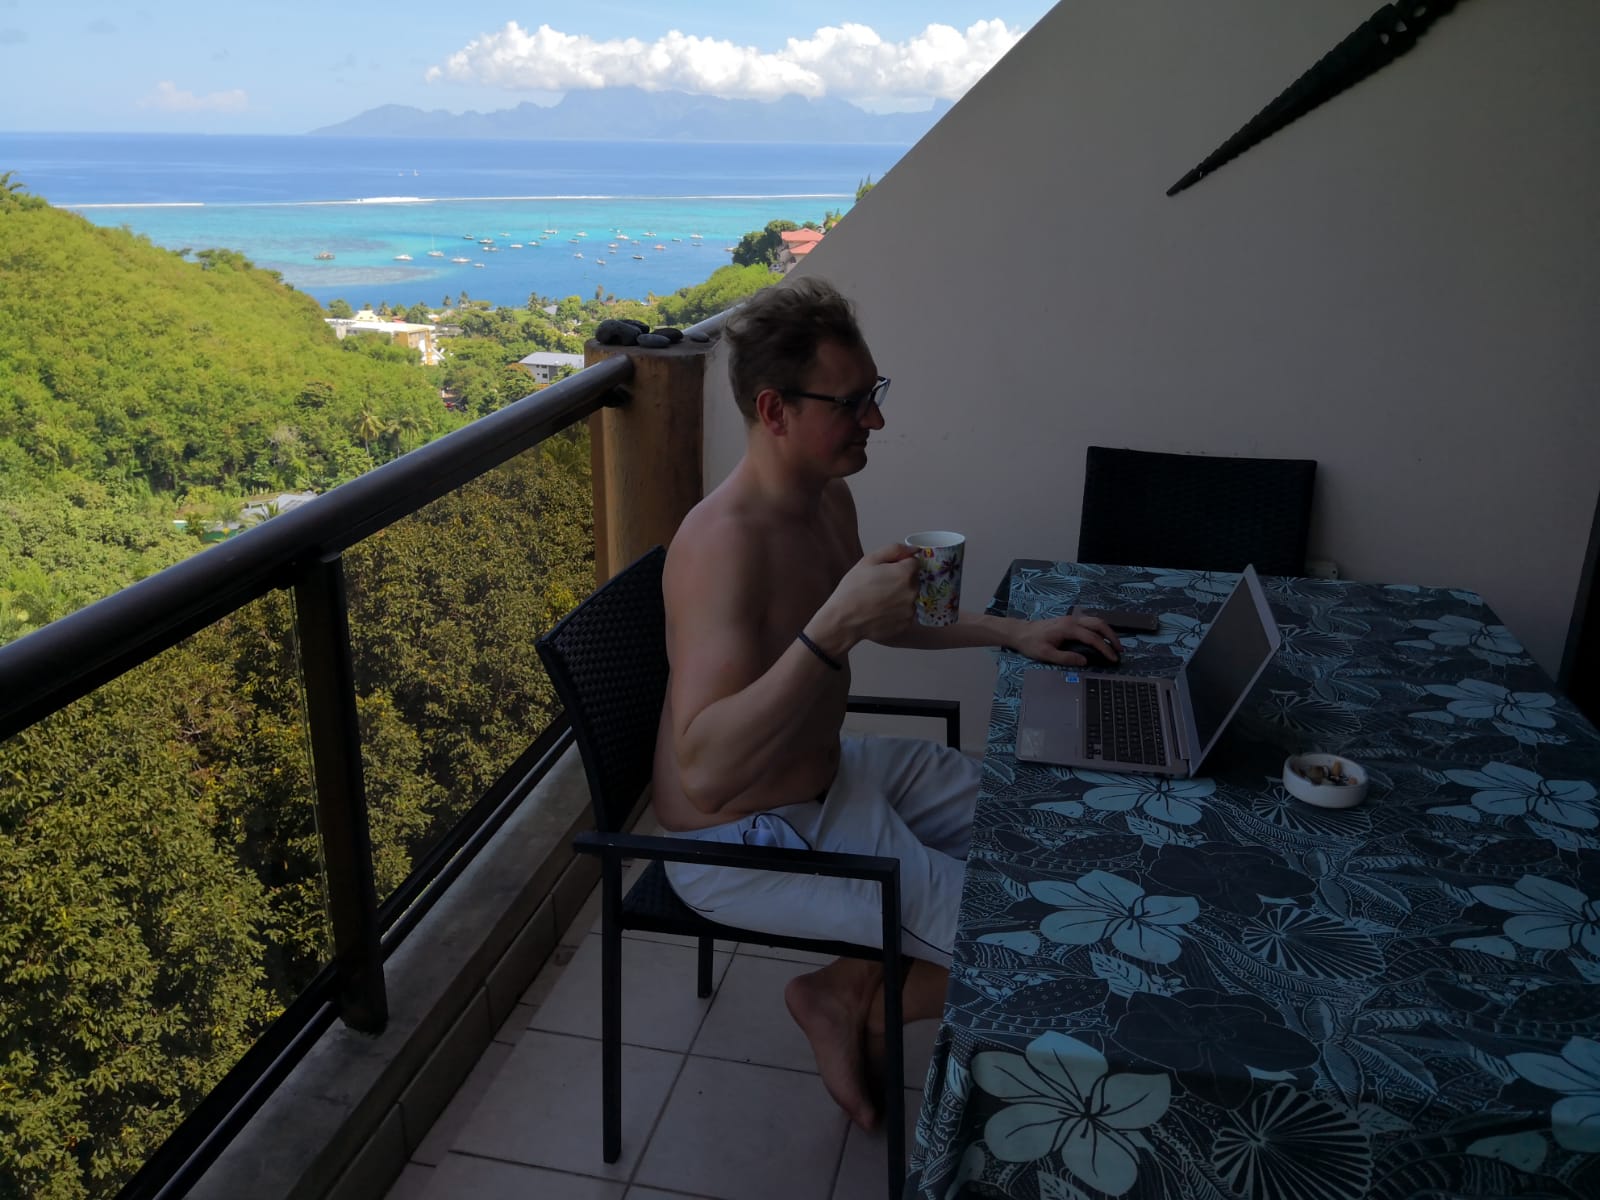 Breaks Swim and Beach: Najlepszym miejscem, w którym pracowałem jako cyfrowy nomad, jest ... Tahiti! : Breaks Swim and Beach: Najlepszym miejscem, w którym pracowałem jako cyfrowy nomad, jest ... Tahiti!